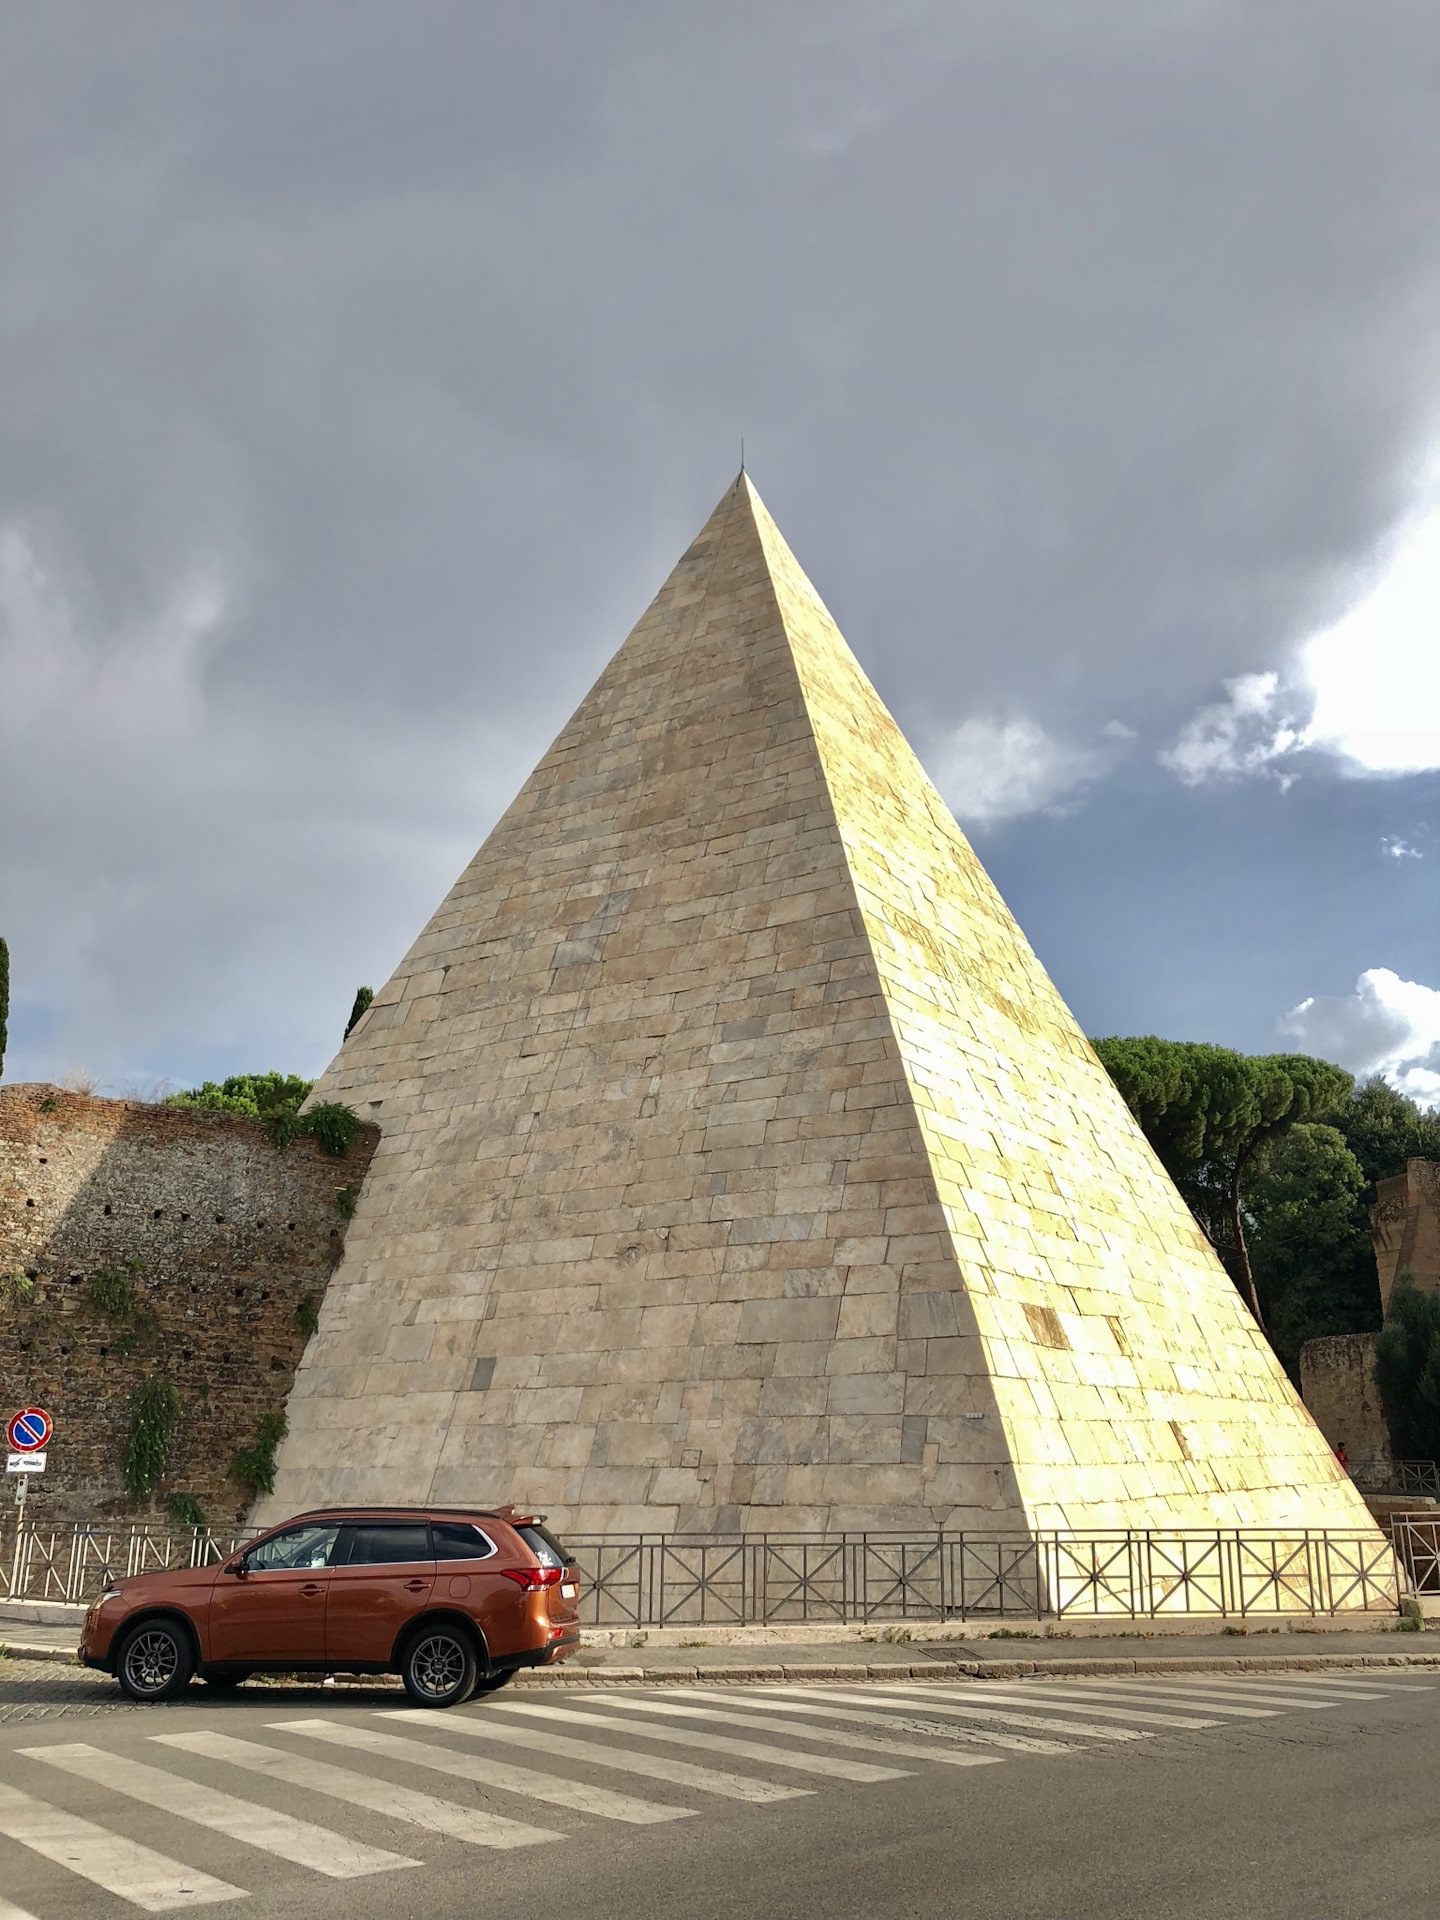 Пирамиды в риме